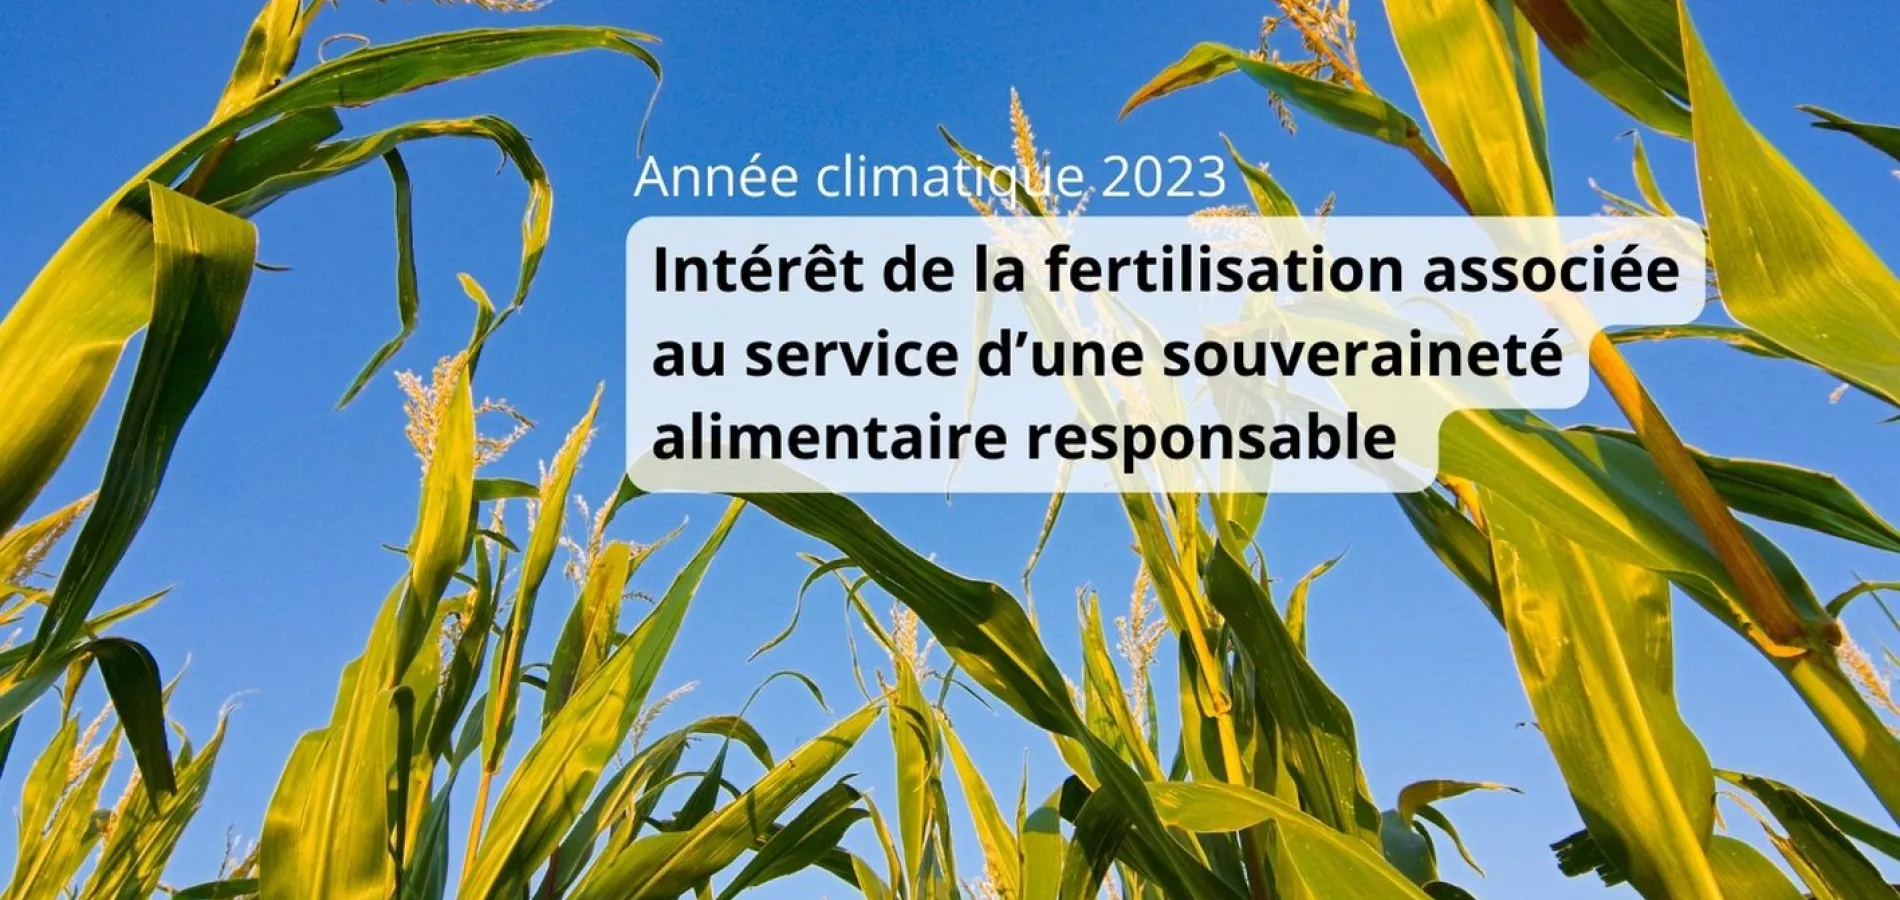 année climatique 2023 et fertilisation associée au service souveraineté alimentaire